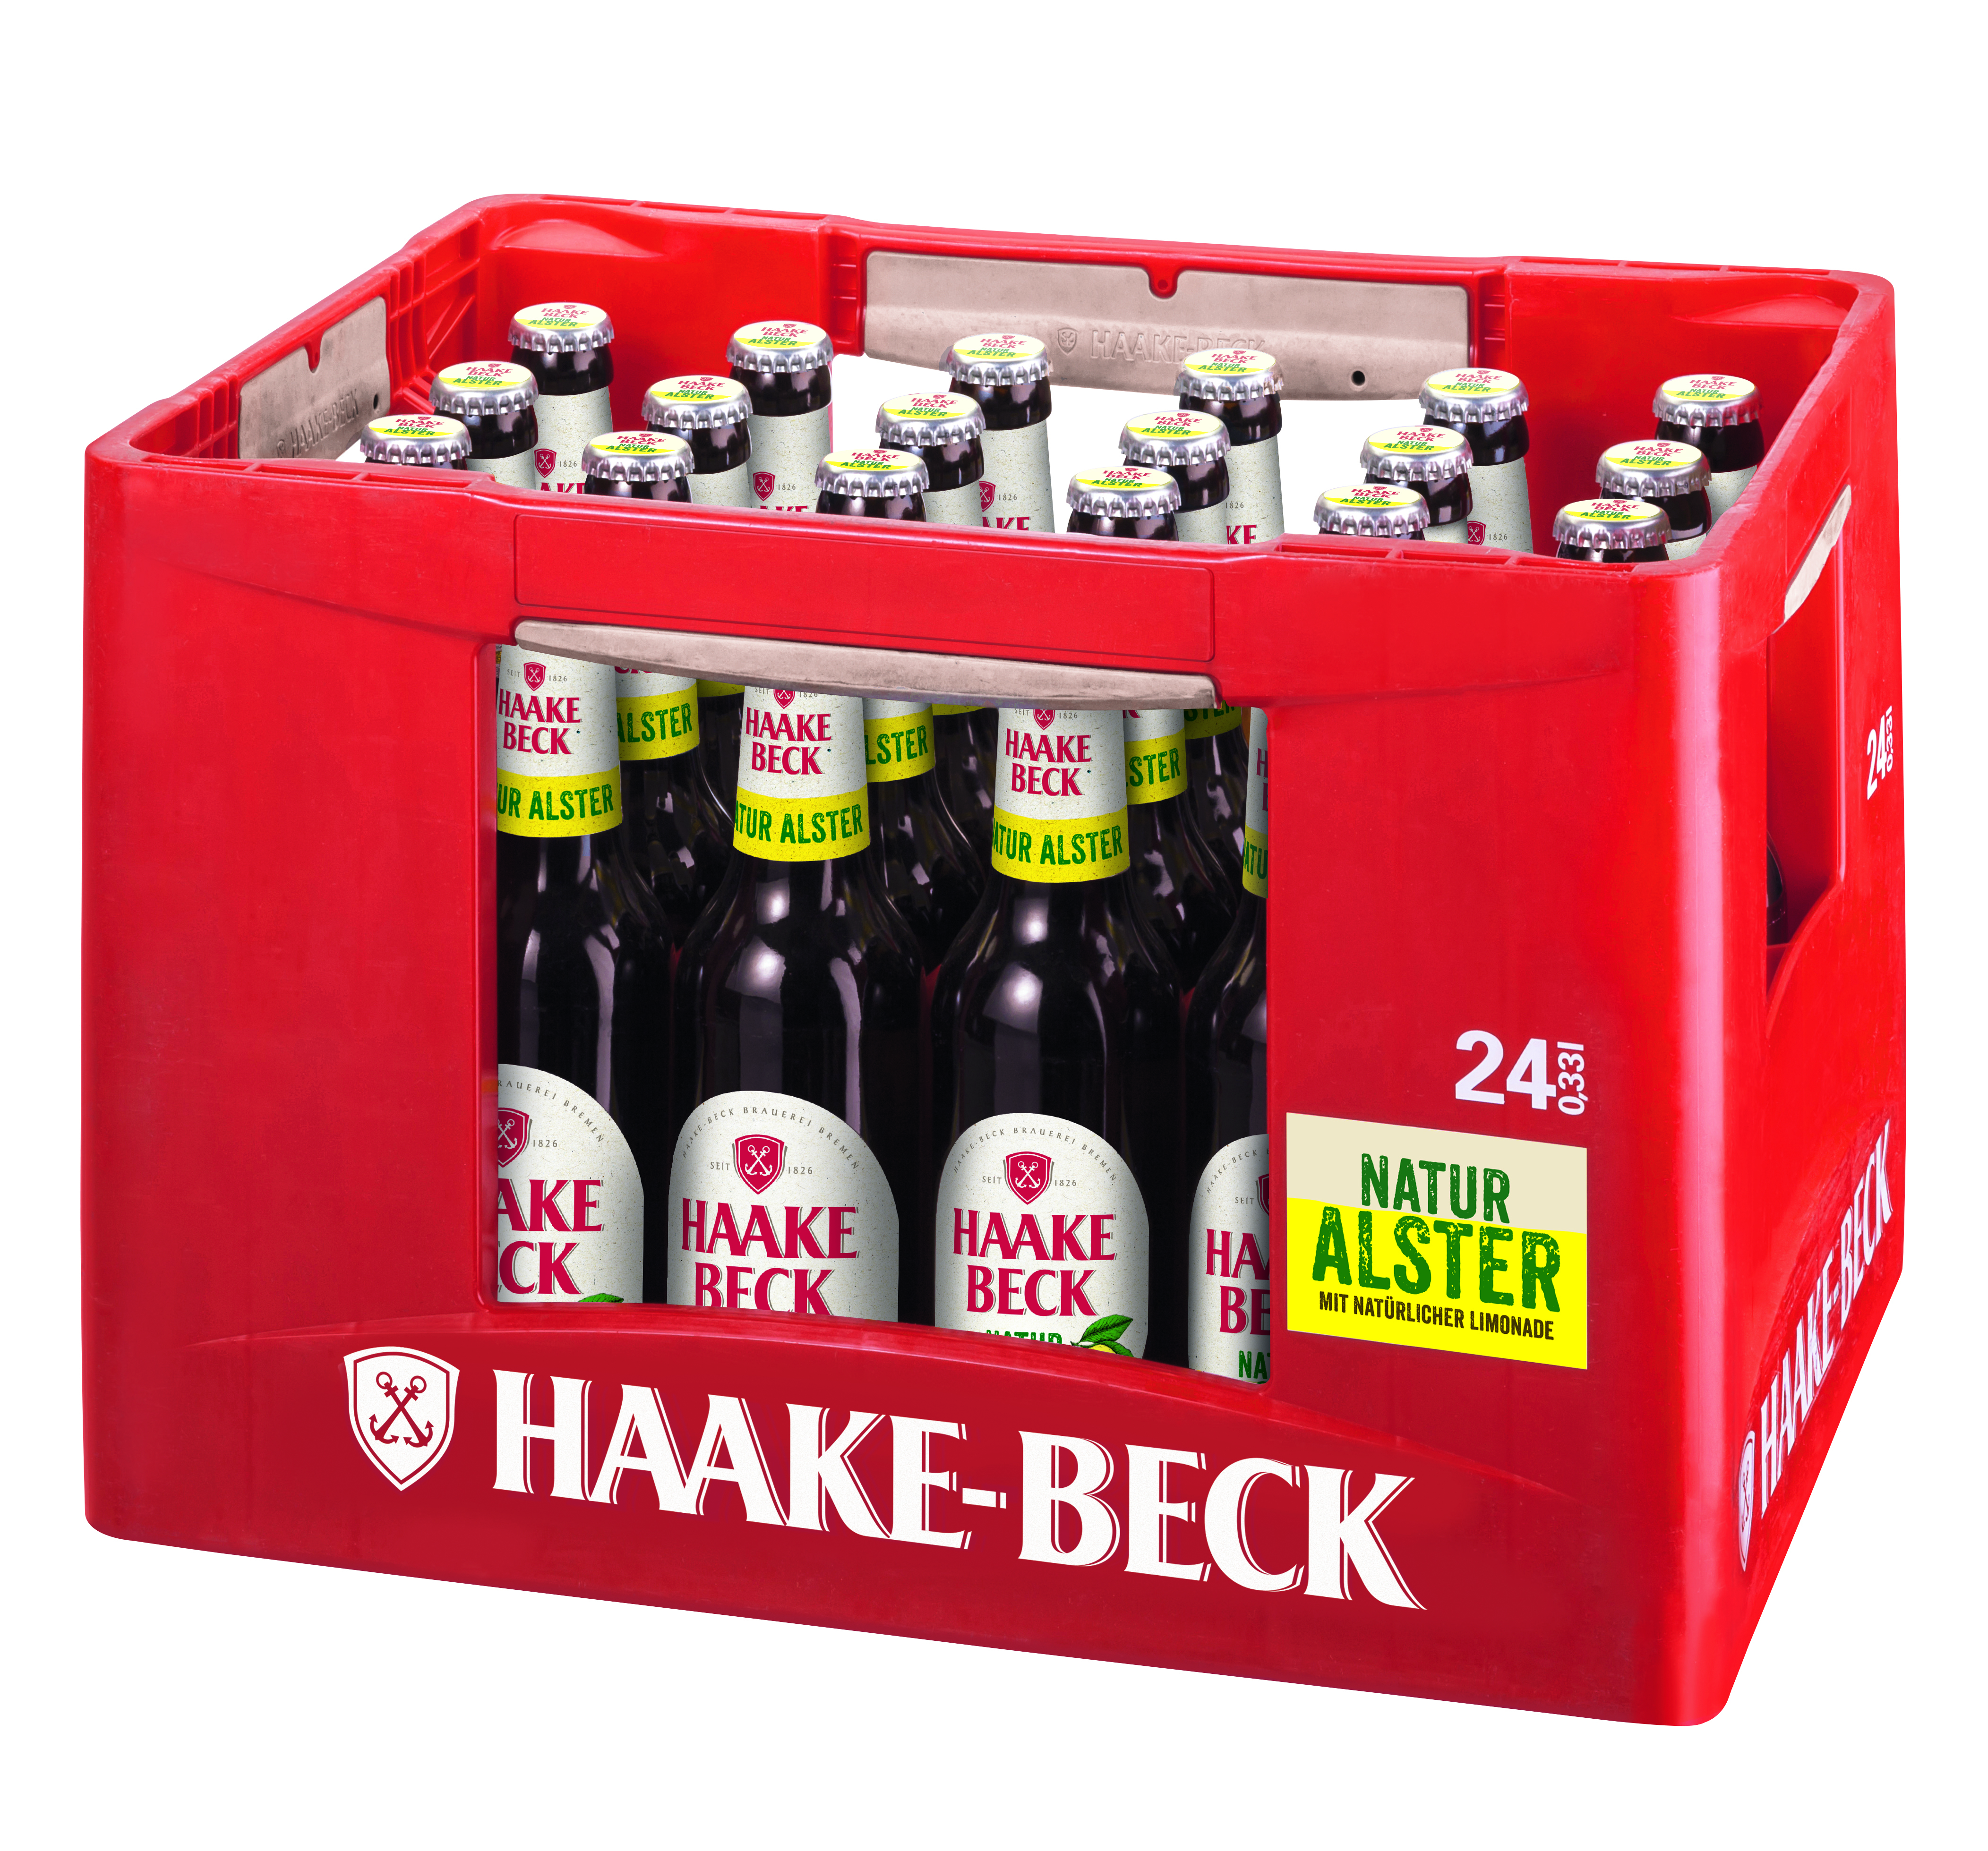 Haake Beck Natur Alster 24/0.33